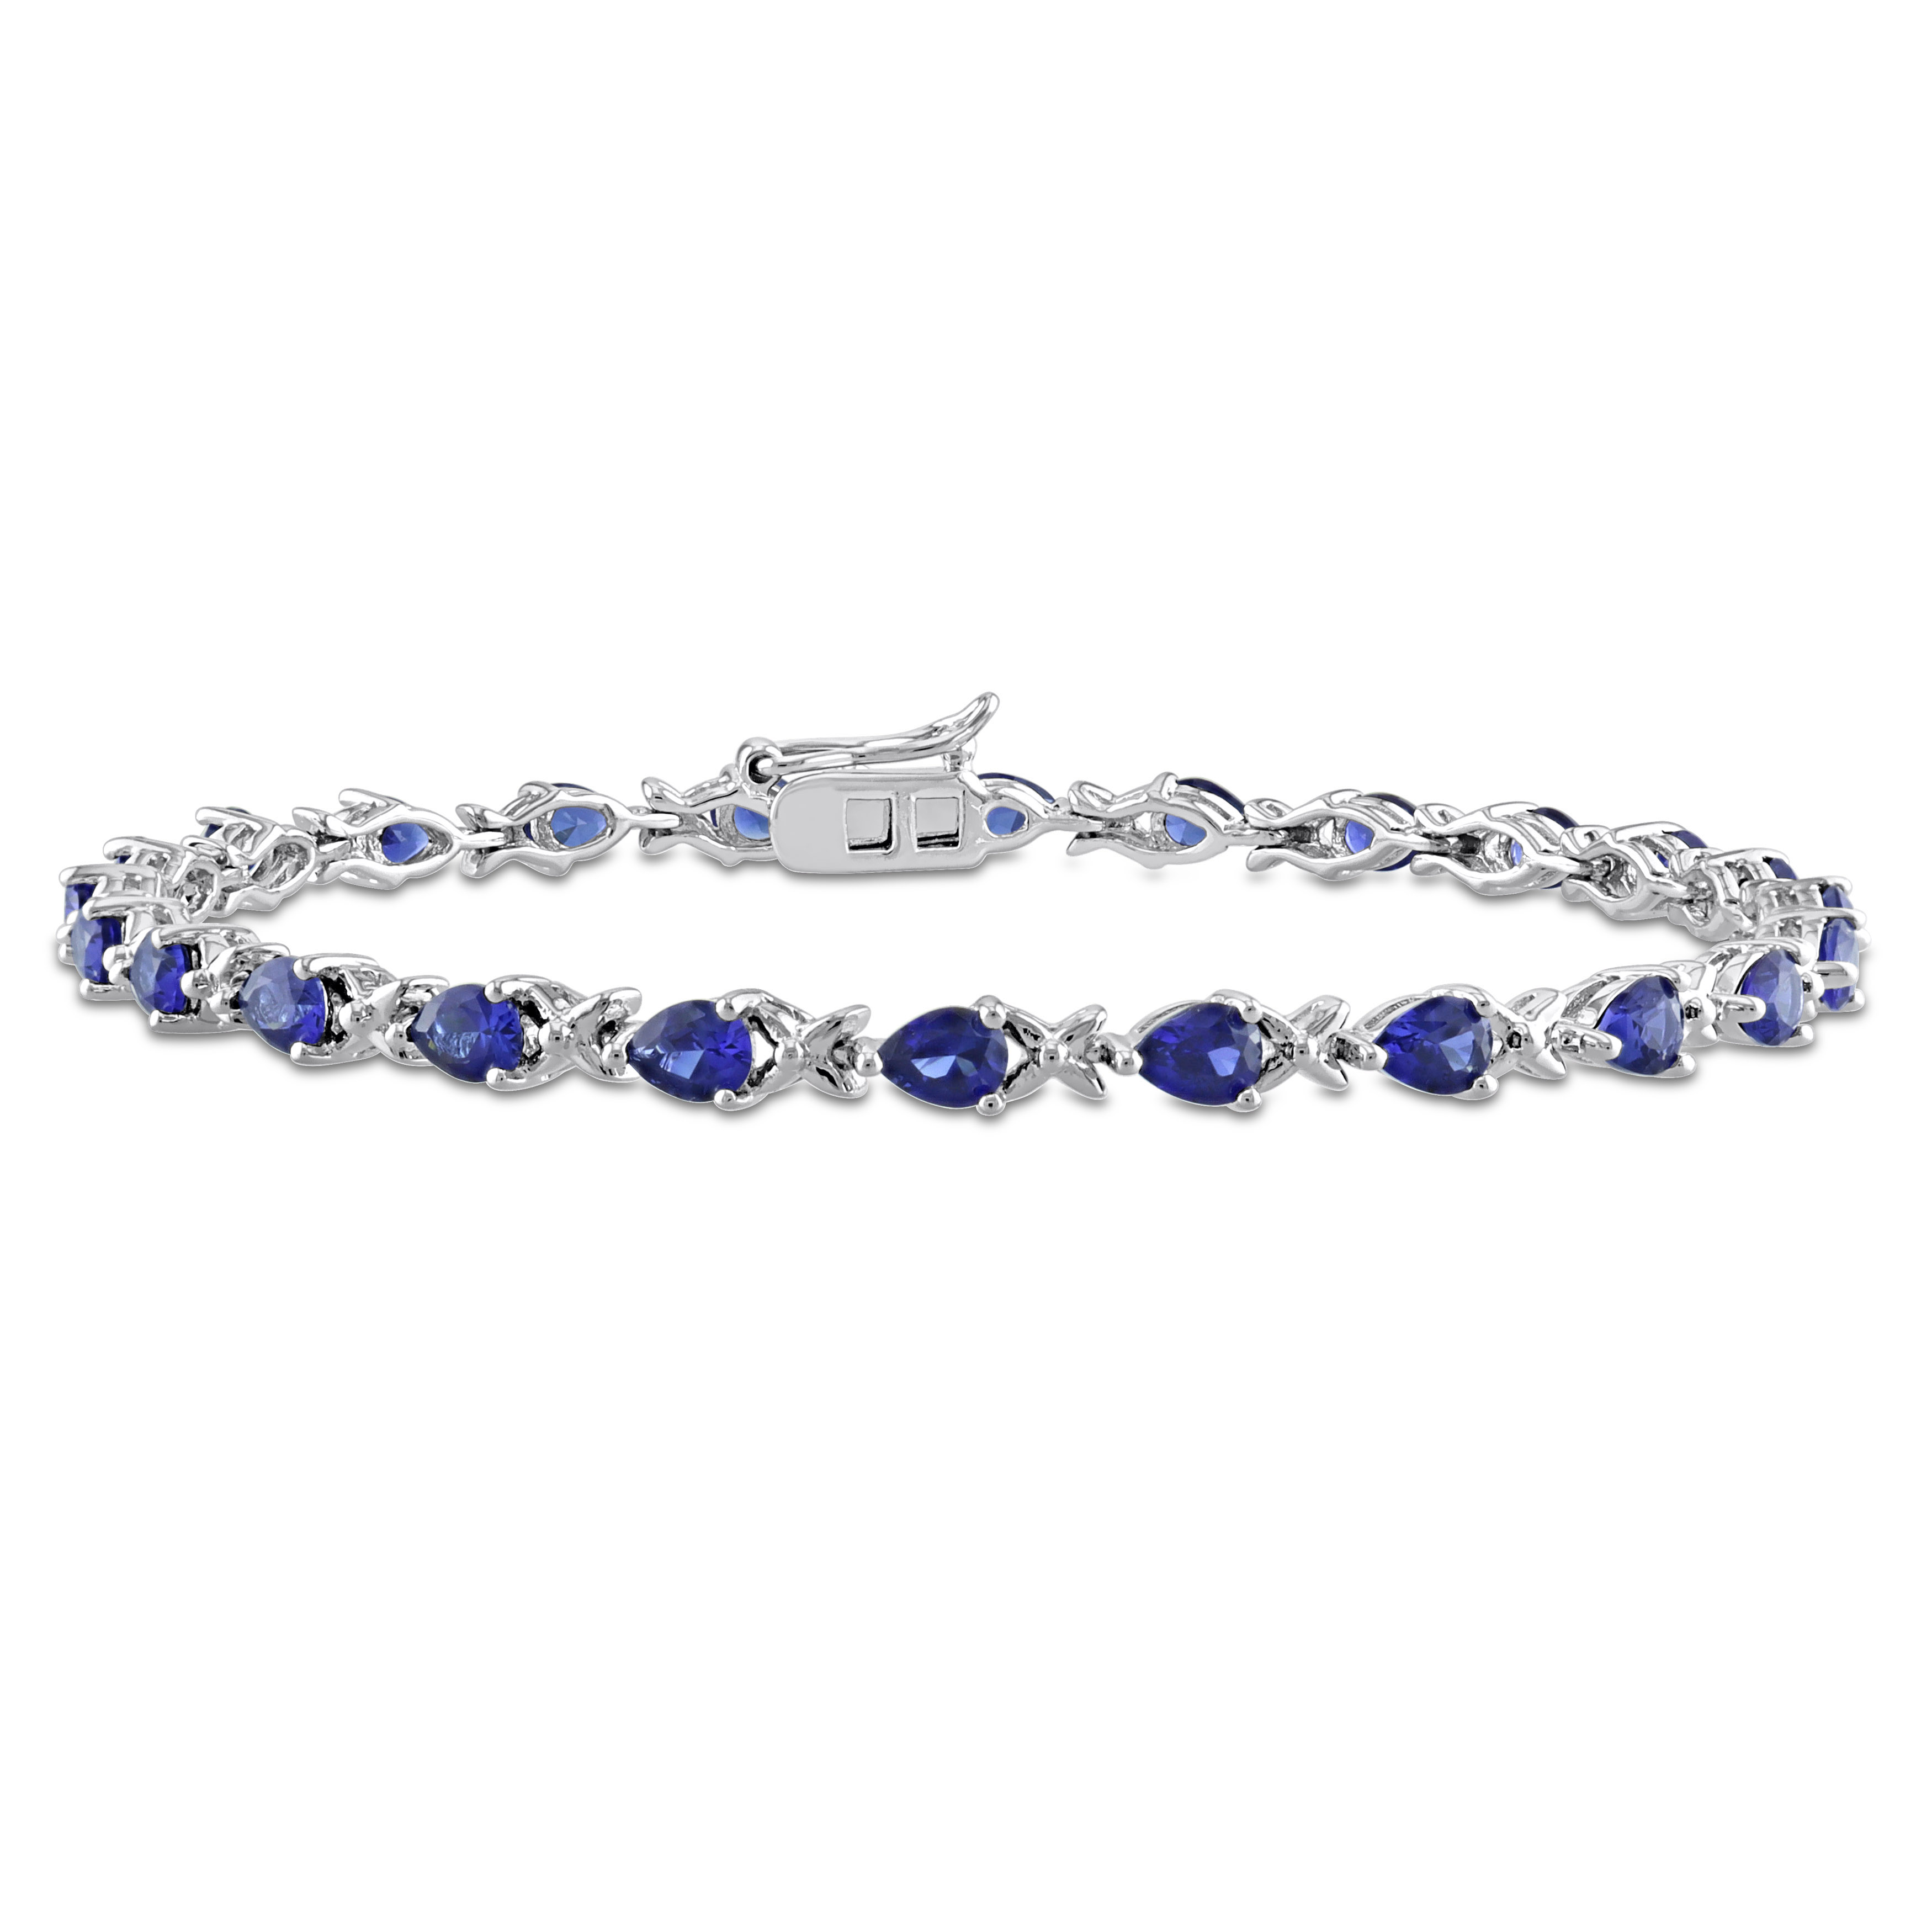 5 1/3 CT TGW Pear-cut Created Blue Sapphire X Link Bracelet in Sterling Silver - 7 in.